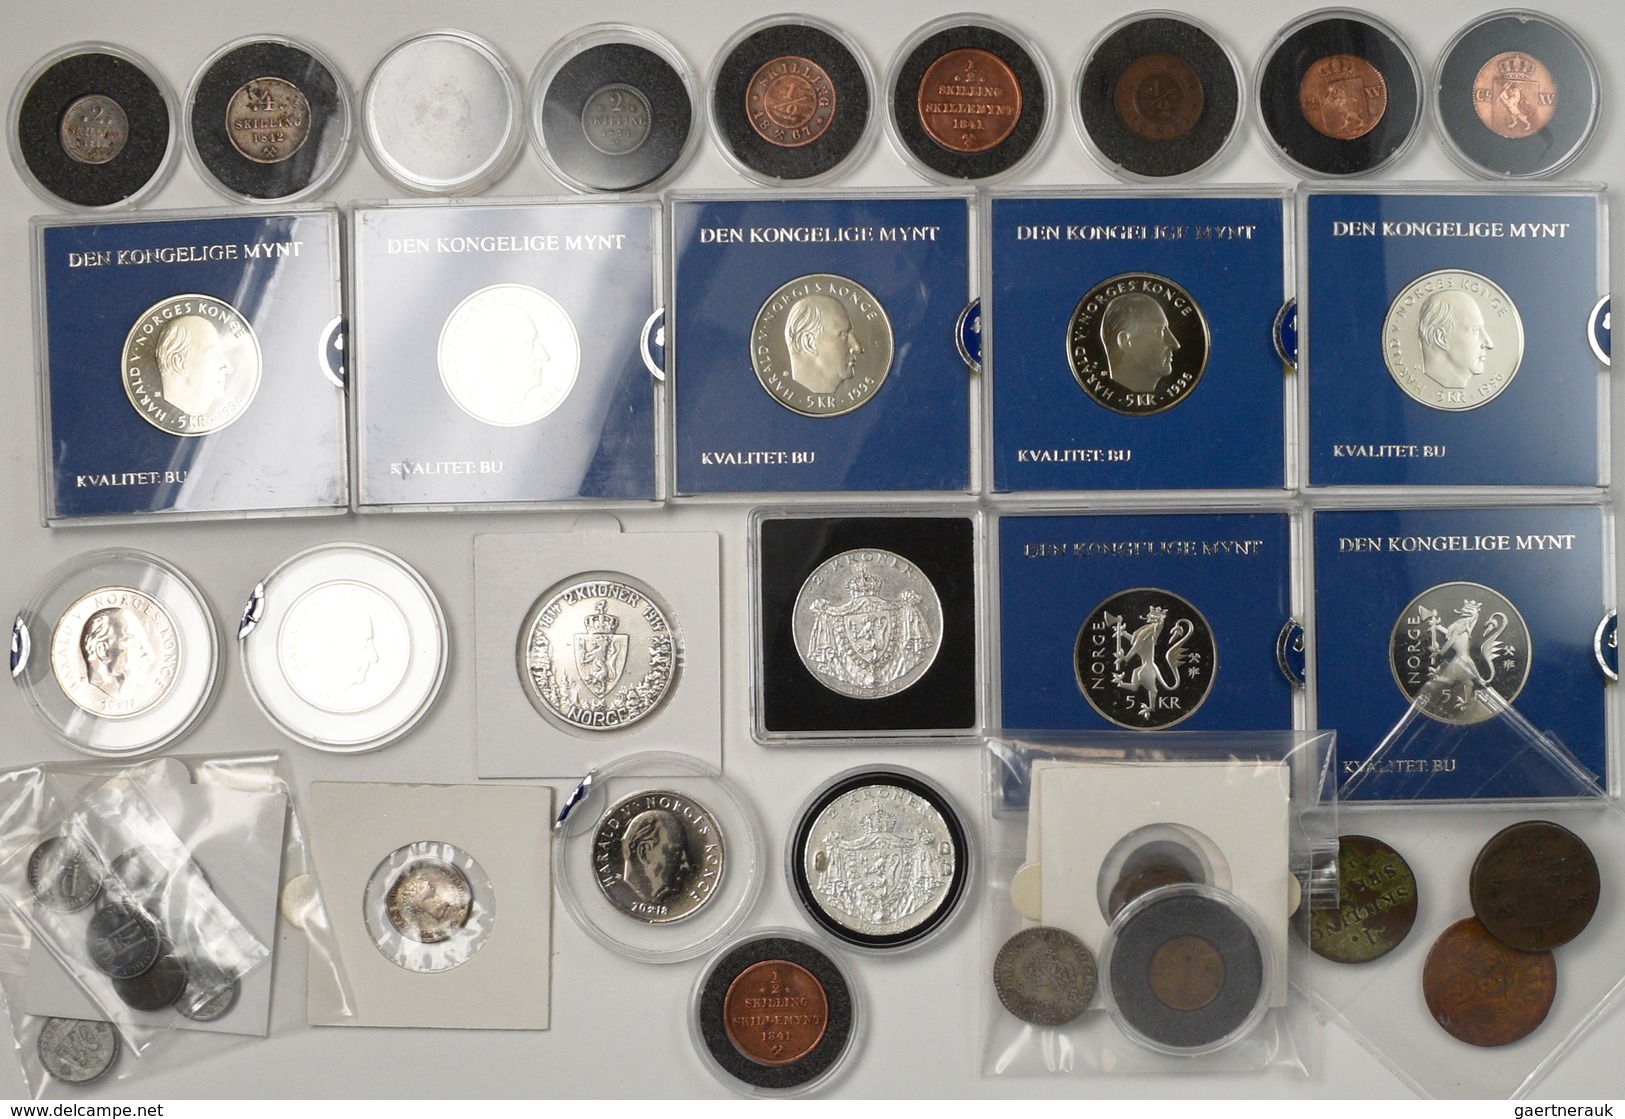 Norwegen: Schönes Lot Mit Diversen Münzen Aus Norwegen Von 1702 Bis Modern. Dabei Skilling Münzen, Ö - Norway